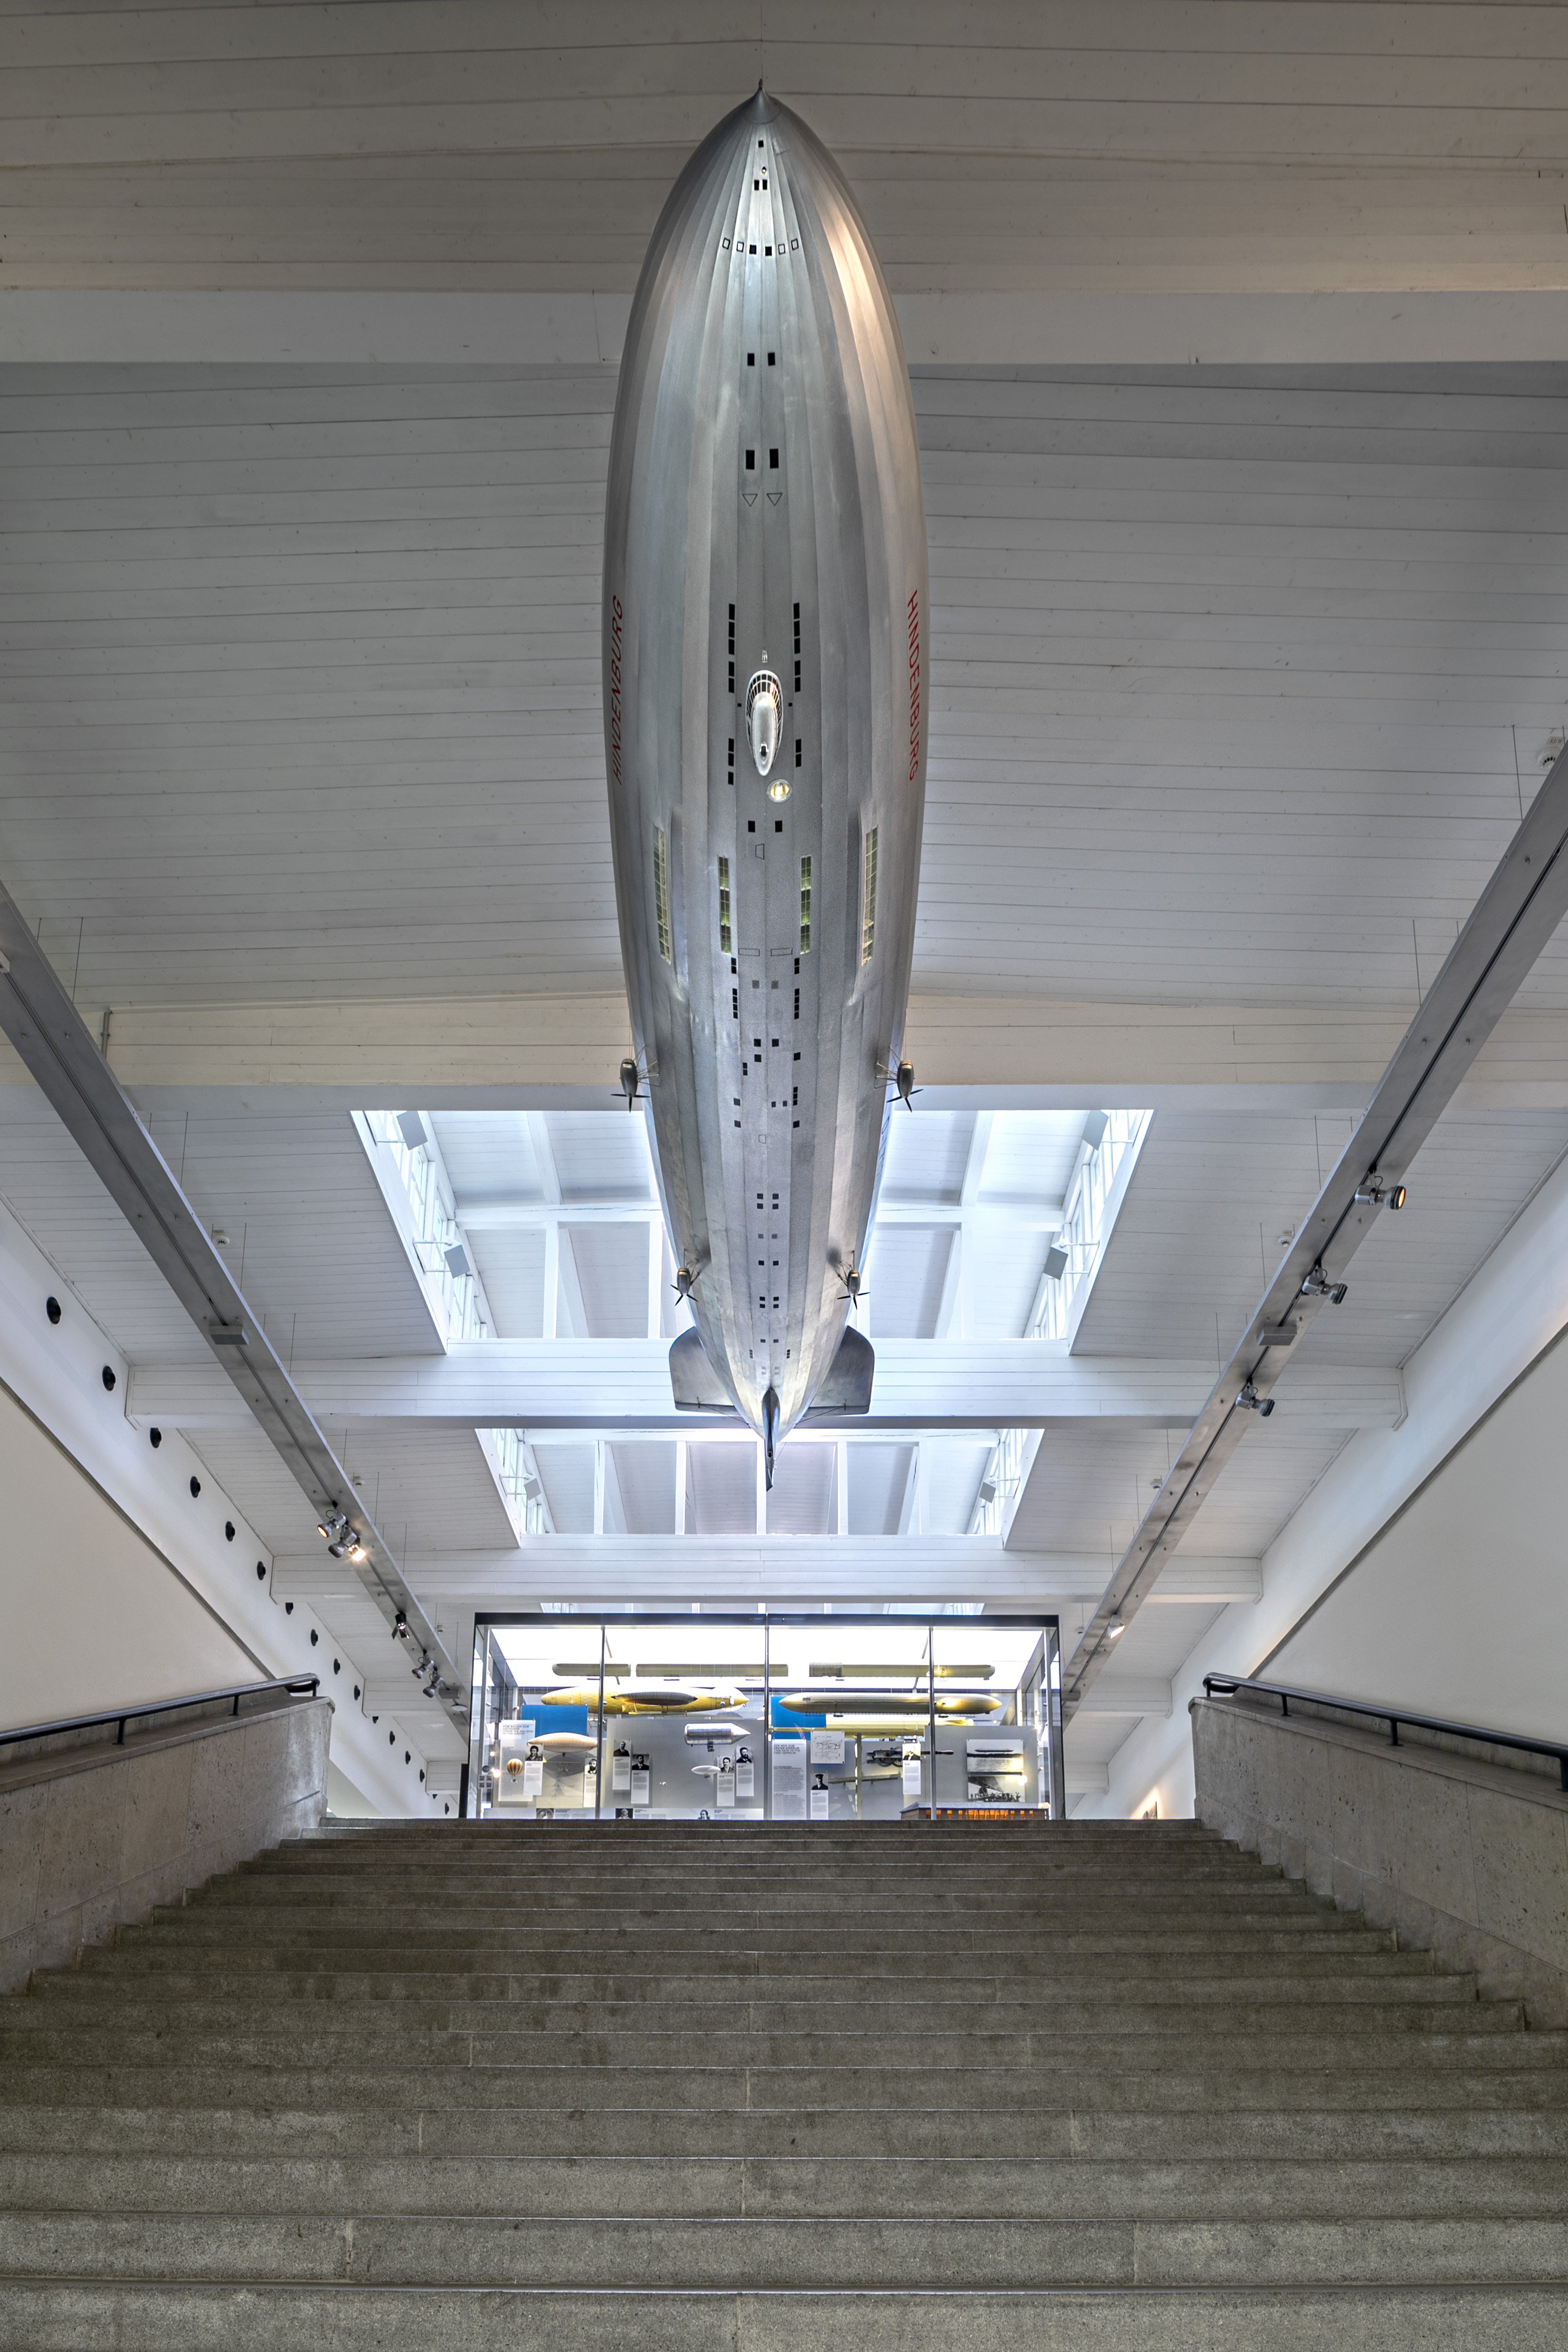 Modell: Luftschiff LZ 129 "Hindenburg" (Zeppelin Museum Friedrichshafen GmbH CC BY-ND)